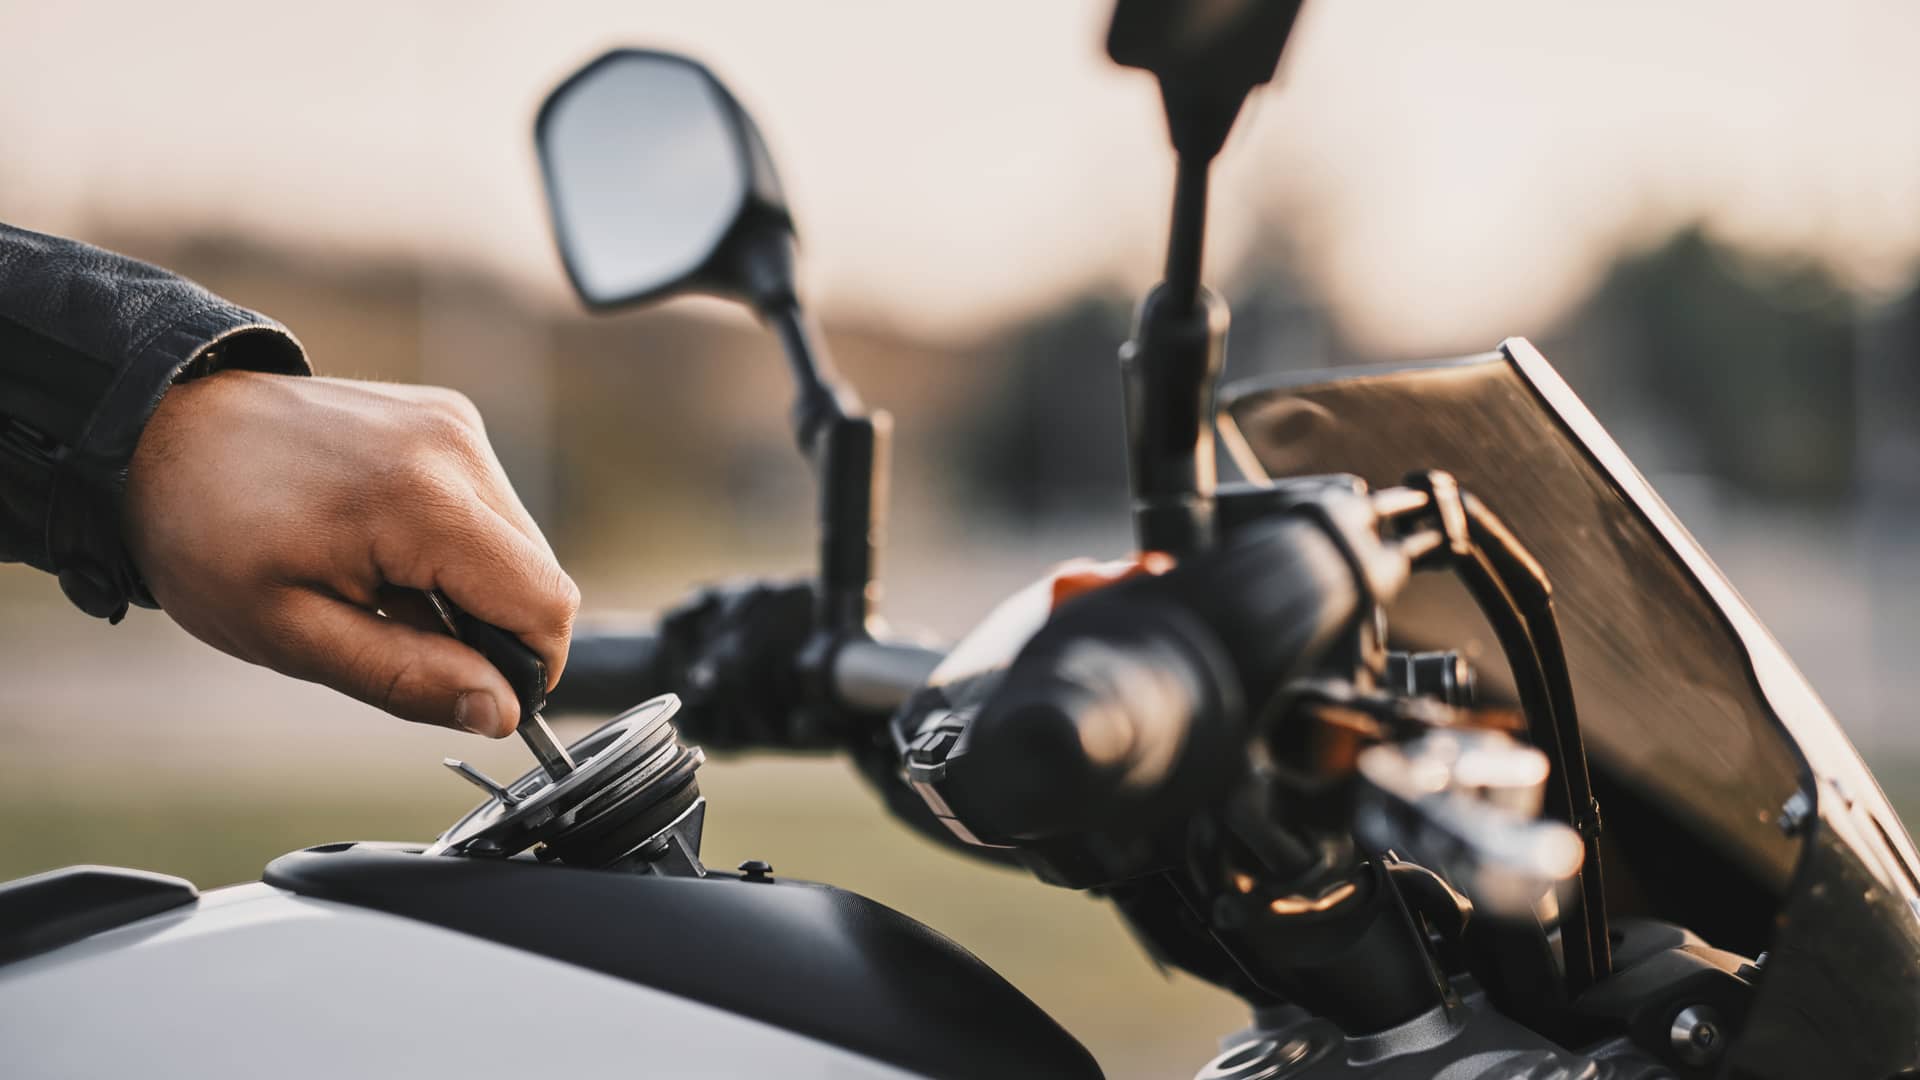 El seguro de una moto 100: ¿qué influye en el precio?